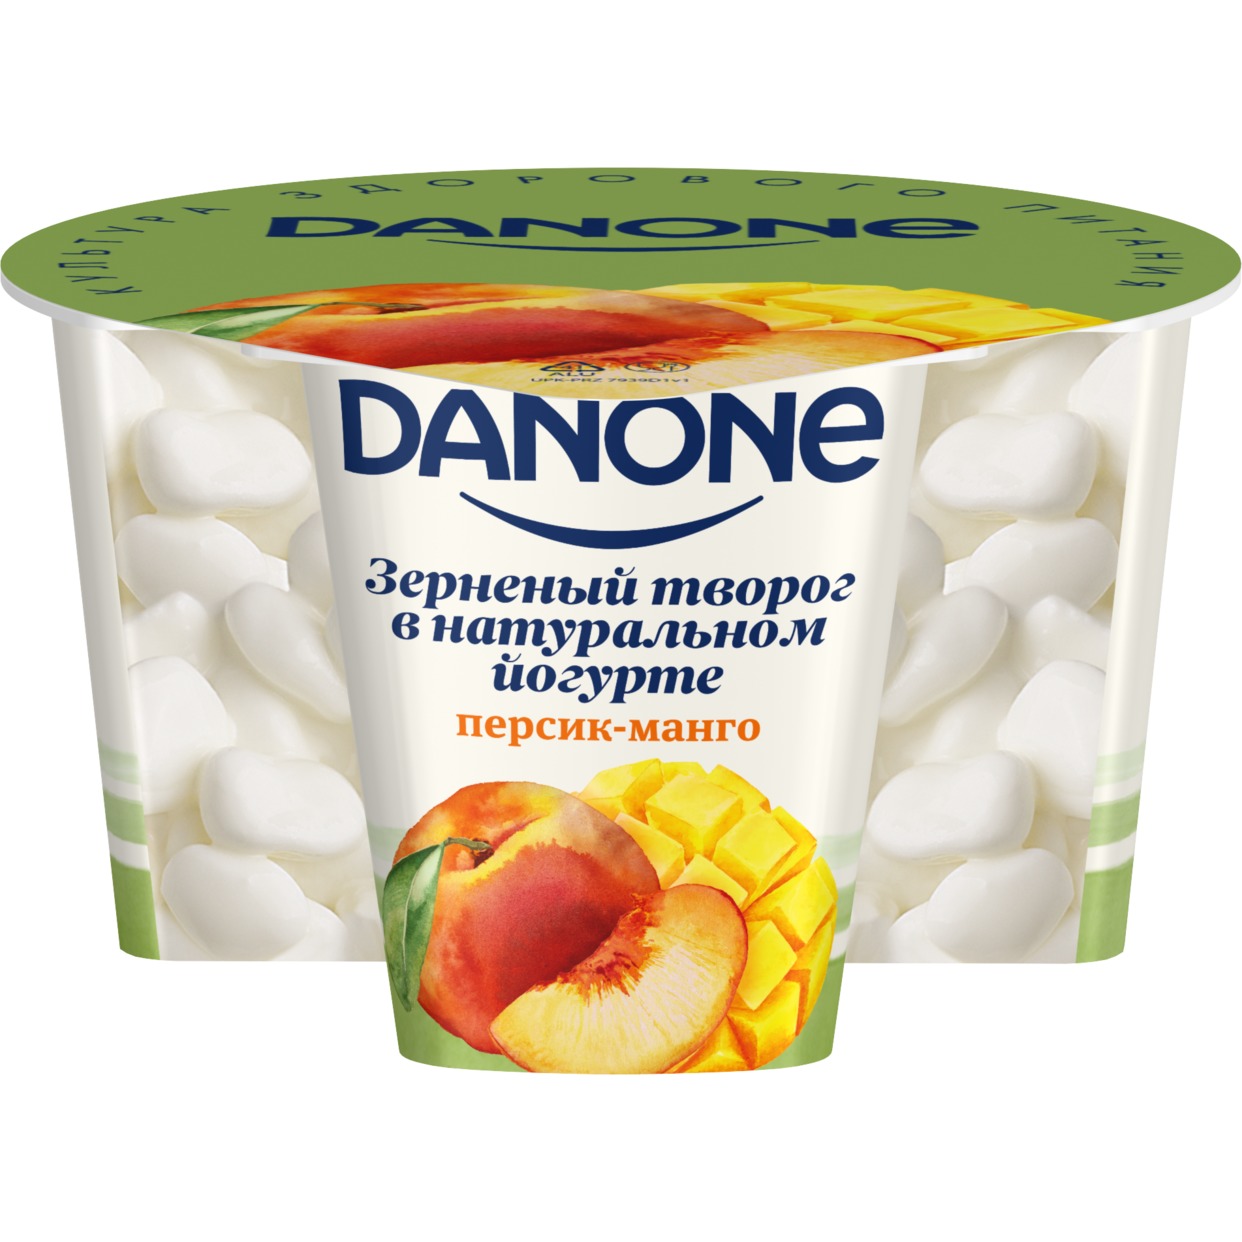 БЗМЖ Данон Творог зерненый в йогурте, с массовой долей жира 5,0% и фруктовый наполнитель "Персик - манго" 150г по акции в Пятерочке